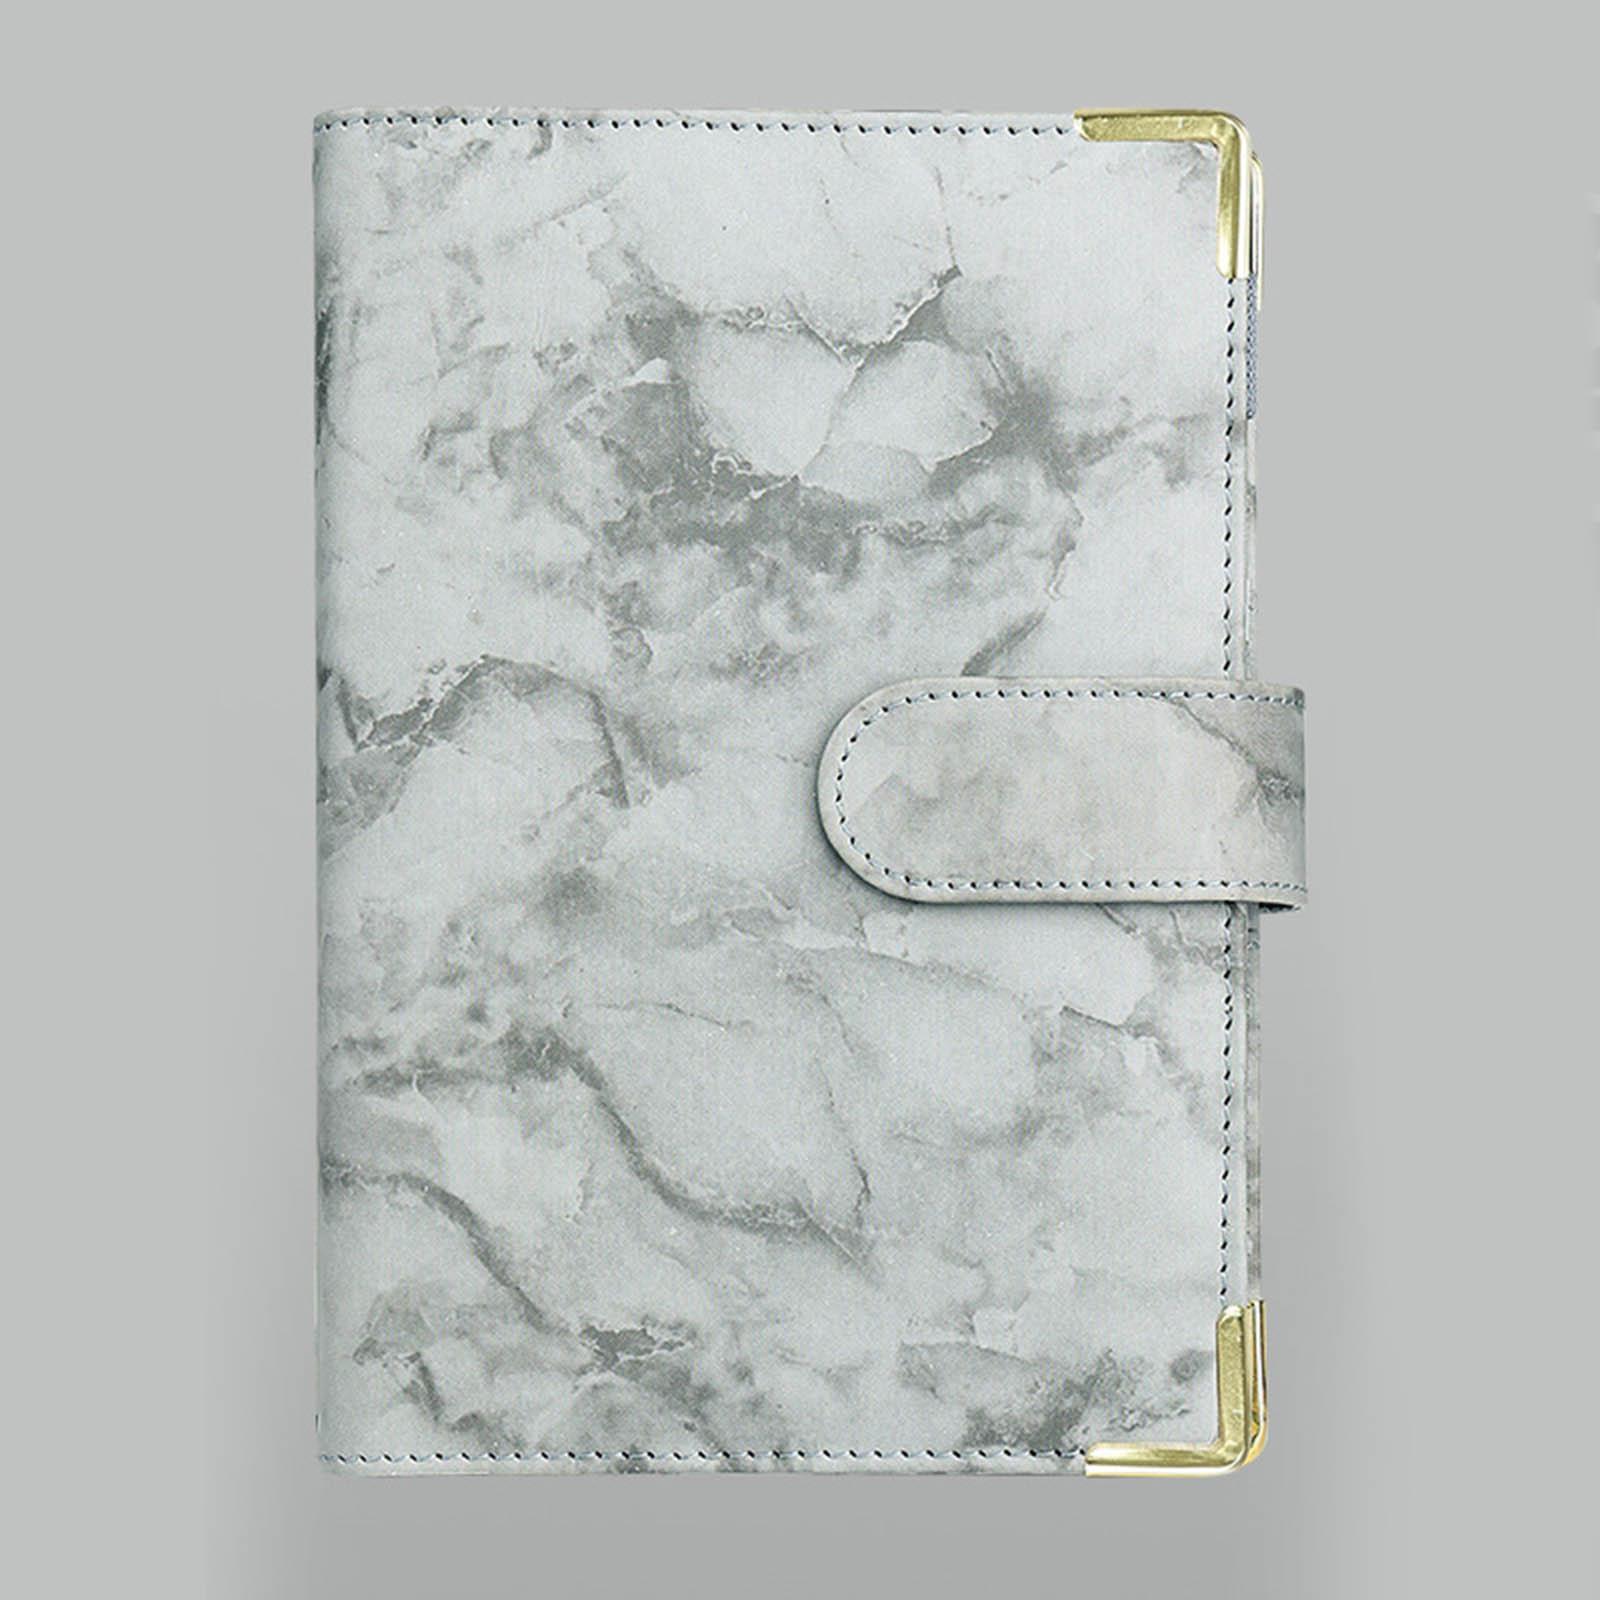 Notebook Binder with Label Sticker Label Binder Pockets Zipper Bag 6 Ring Binder Cover Loose Leaf Binder Cash Budget Sheet Money Organizer